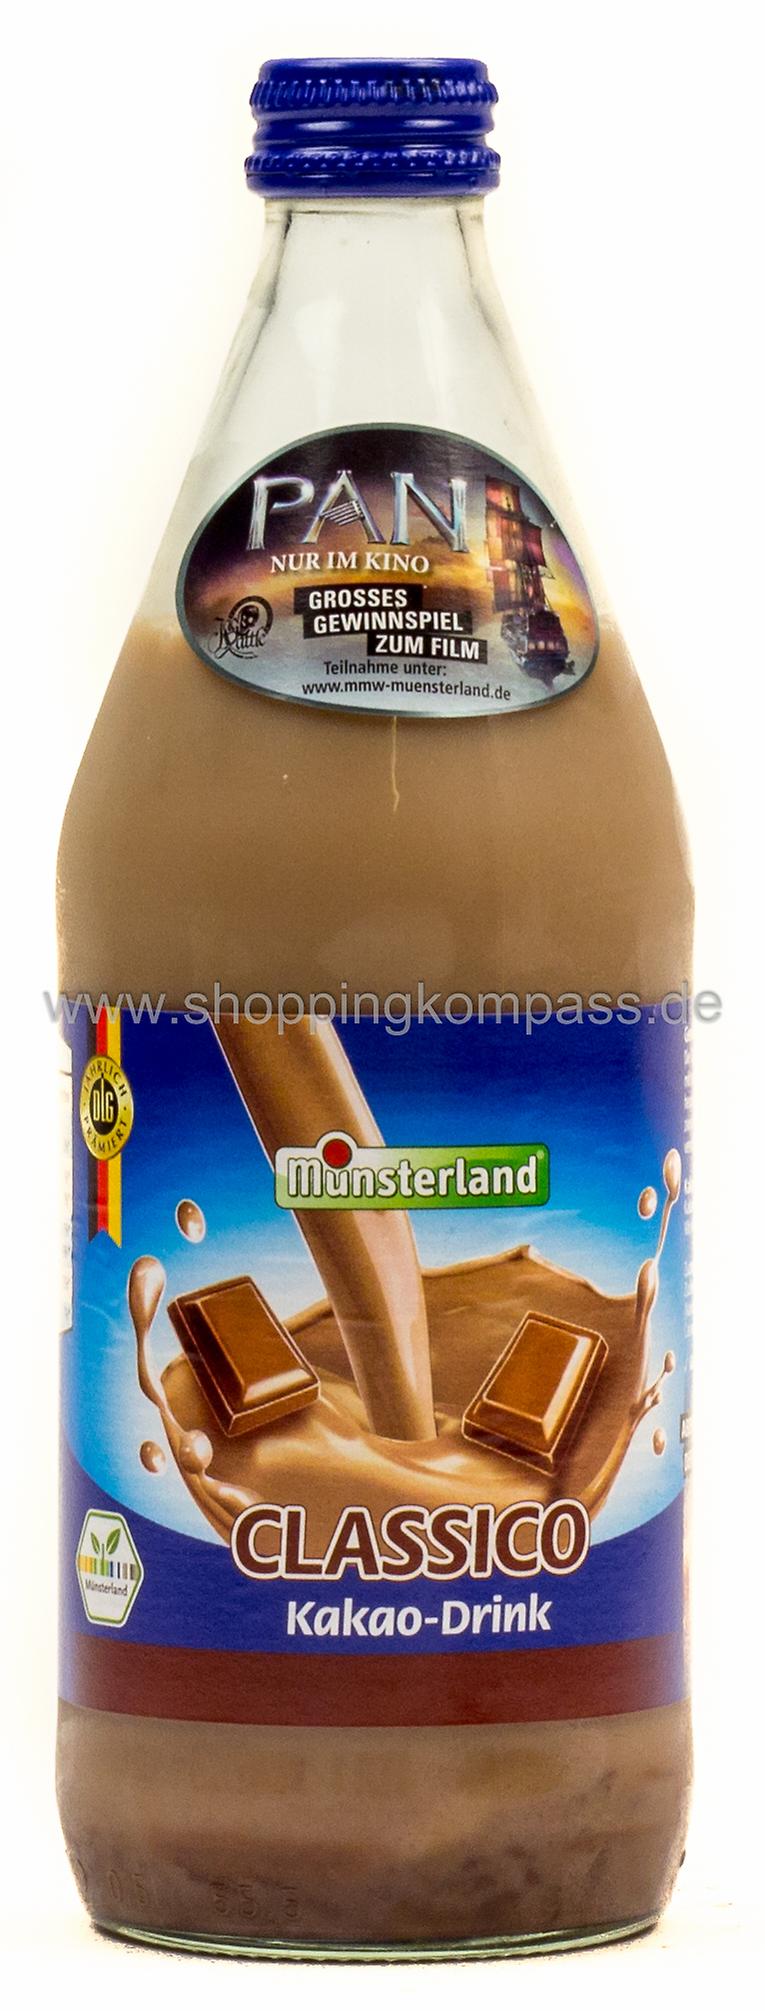 Münsterland Classico Kakao-Drink 0,5 l Glas